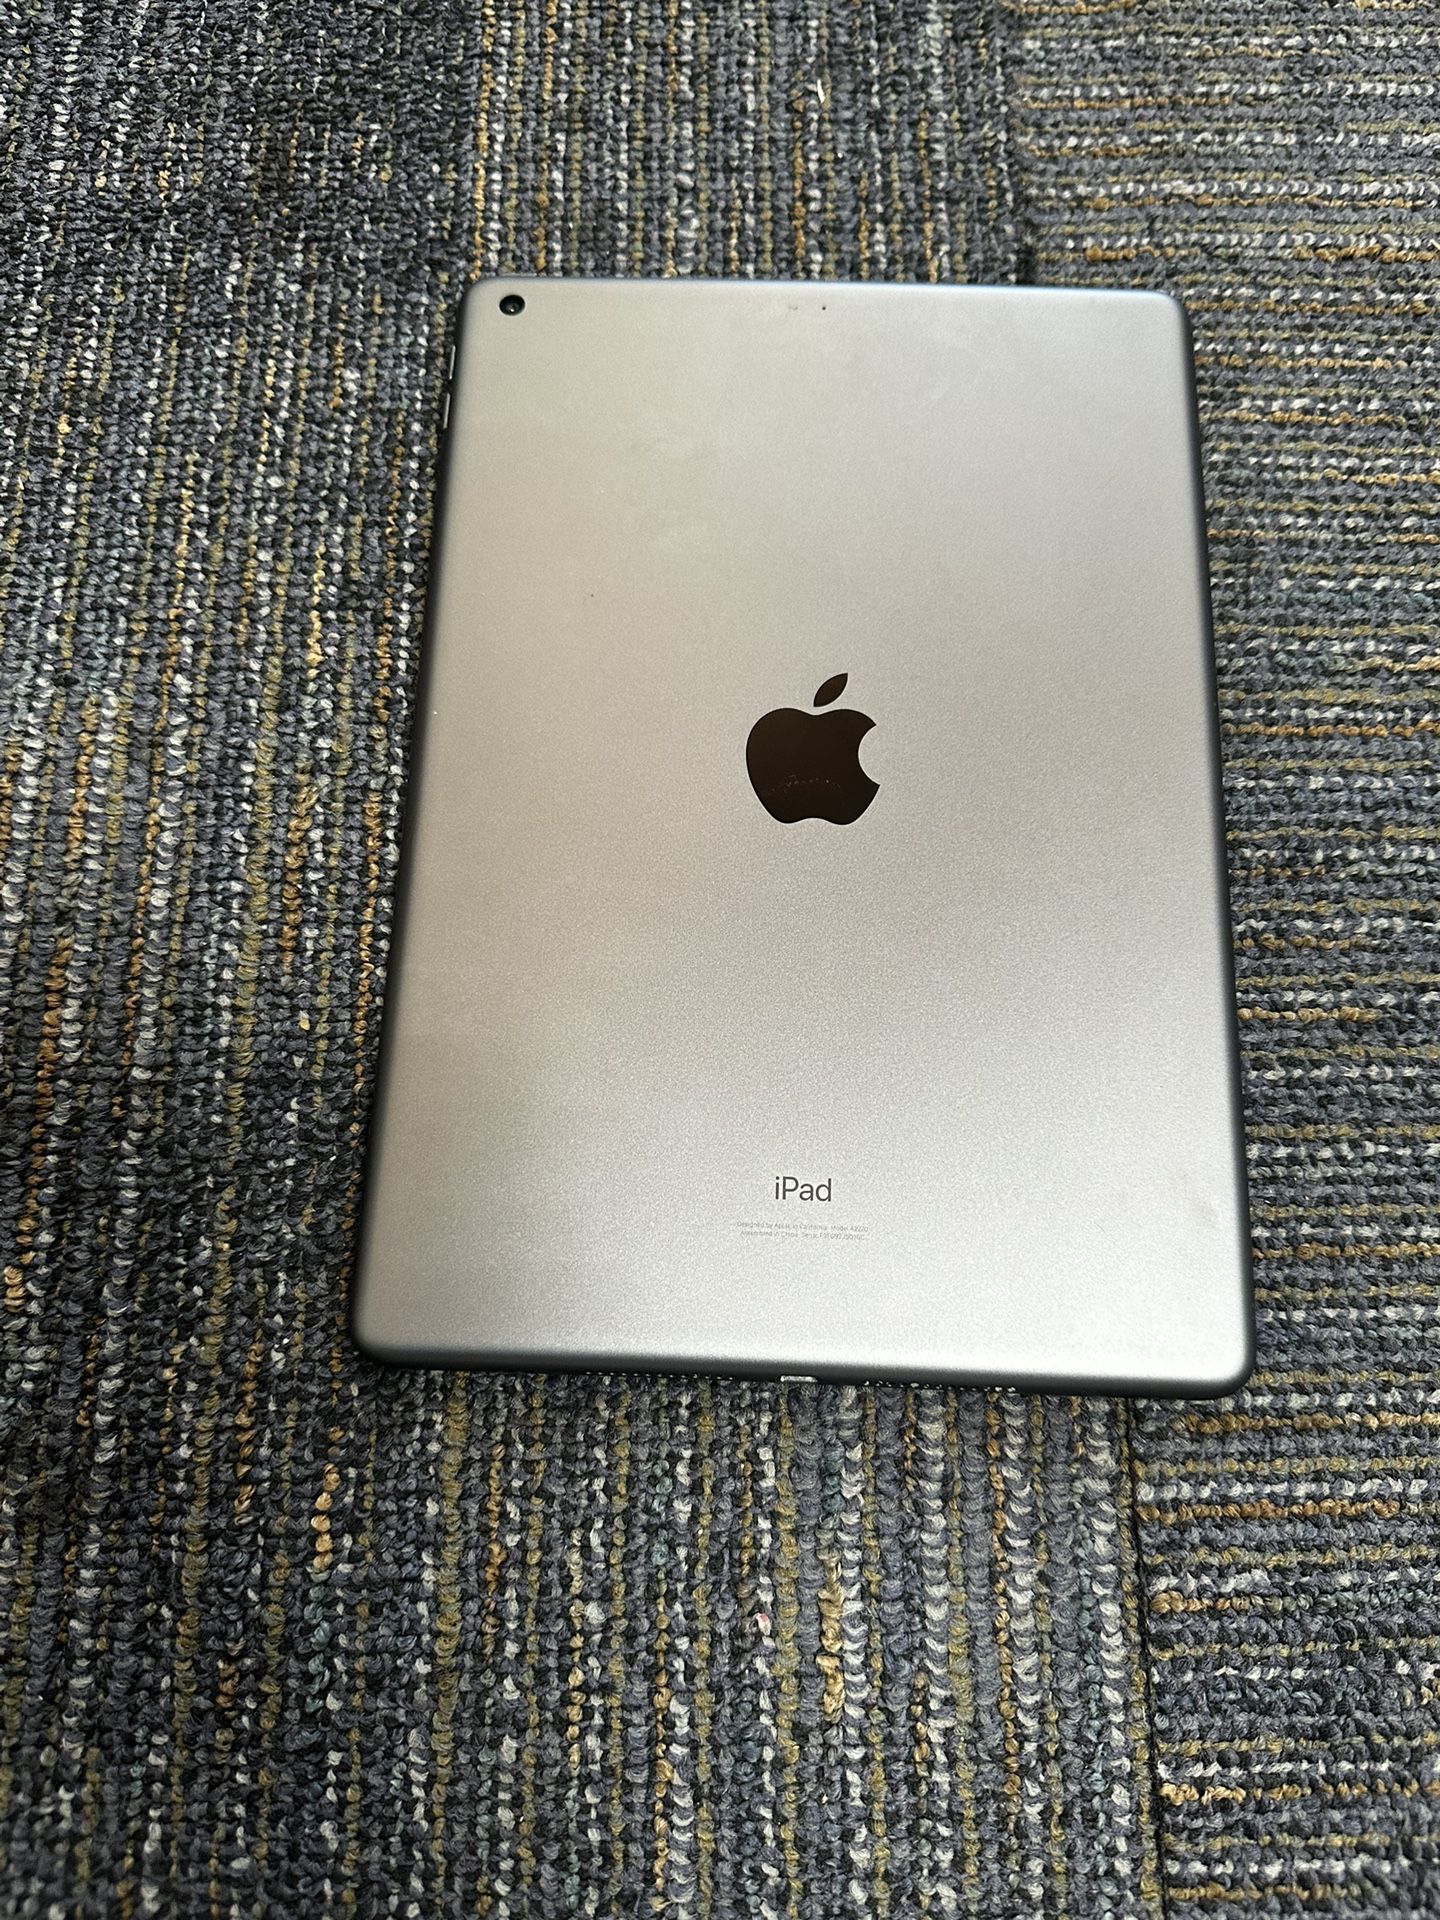 iPad 8th Generation Wi-Fi 32gb 